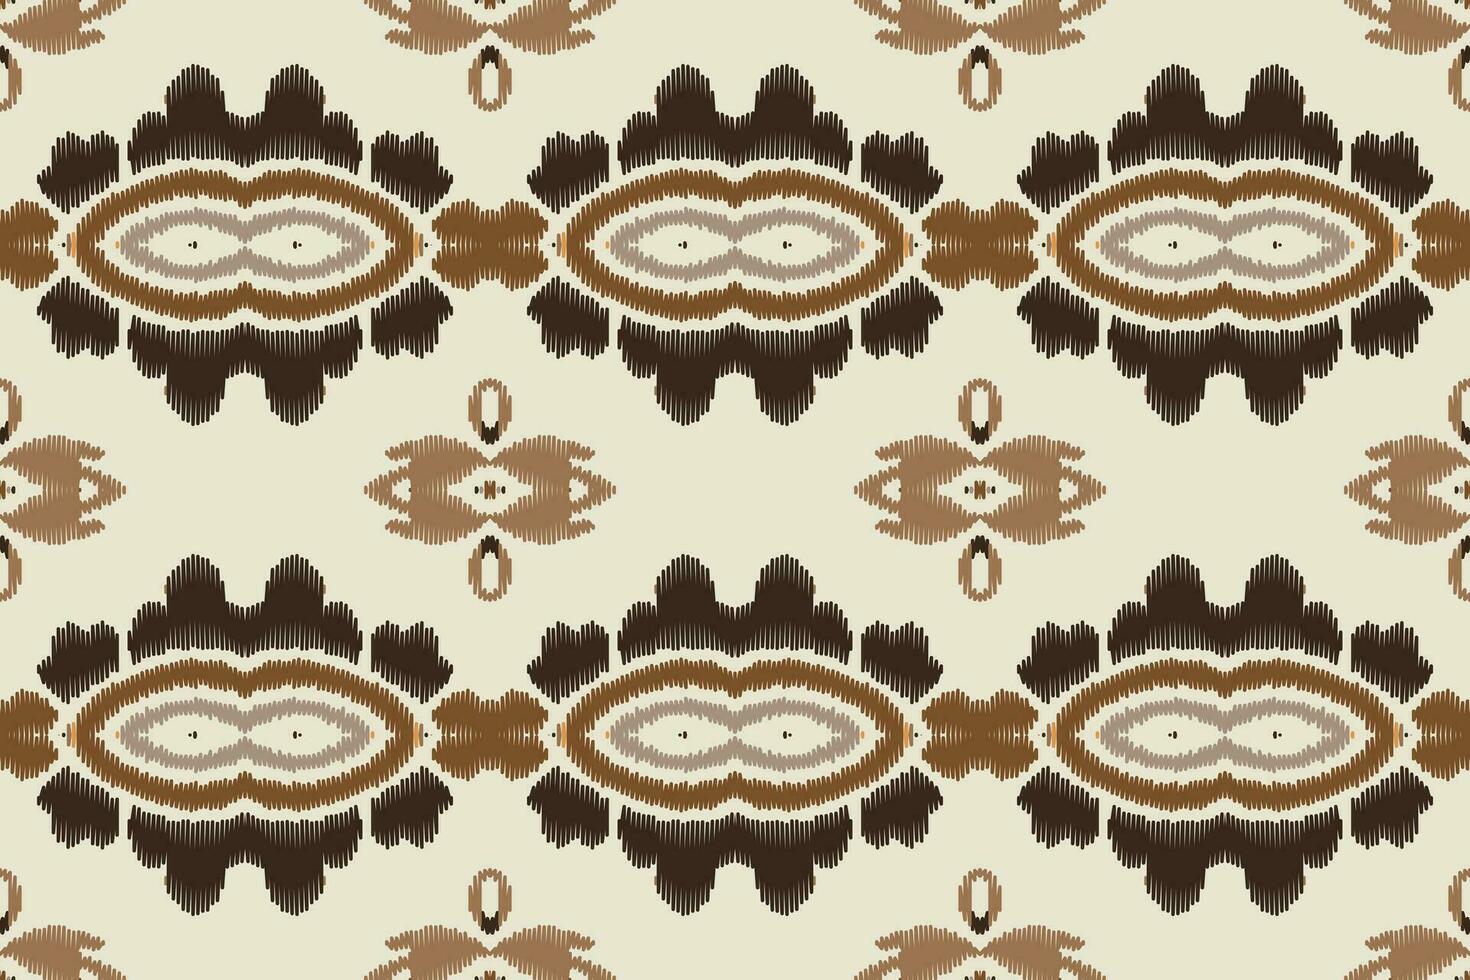 ikat damast paisley borduurwerk achtergrond. ikat kader meetkundig etnisch oosters patroon traditioneel.azteken stijl abstract vector illustratie.ontwerp voor textuur, stof, kleding, verpakking, sarong.